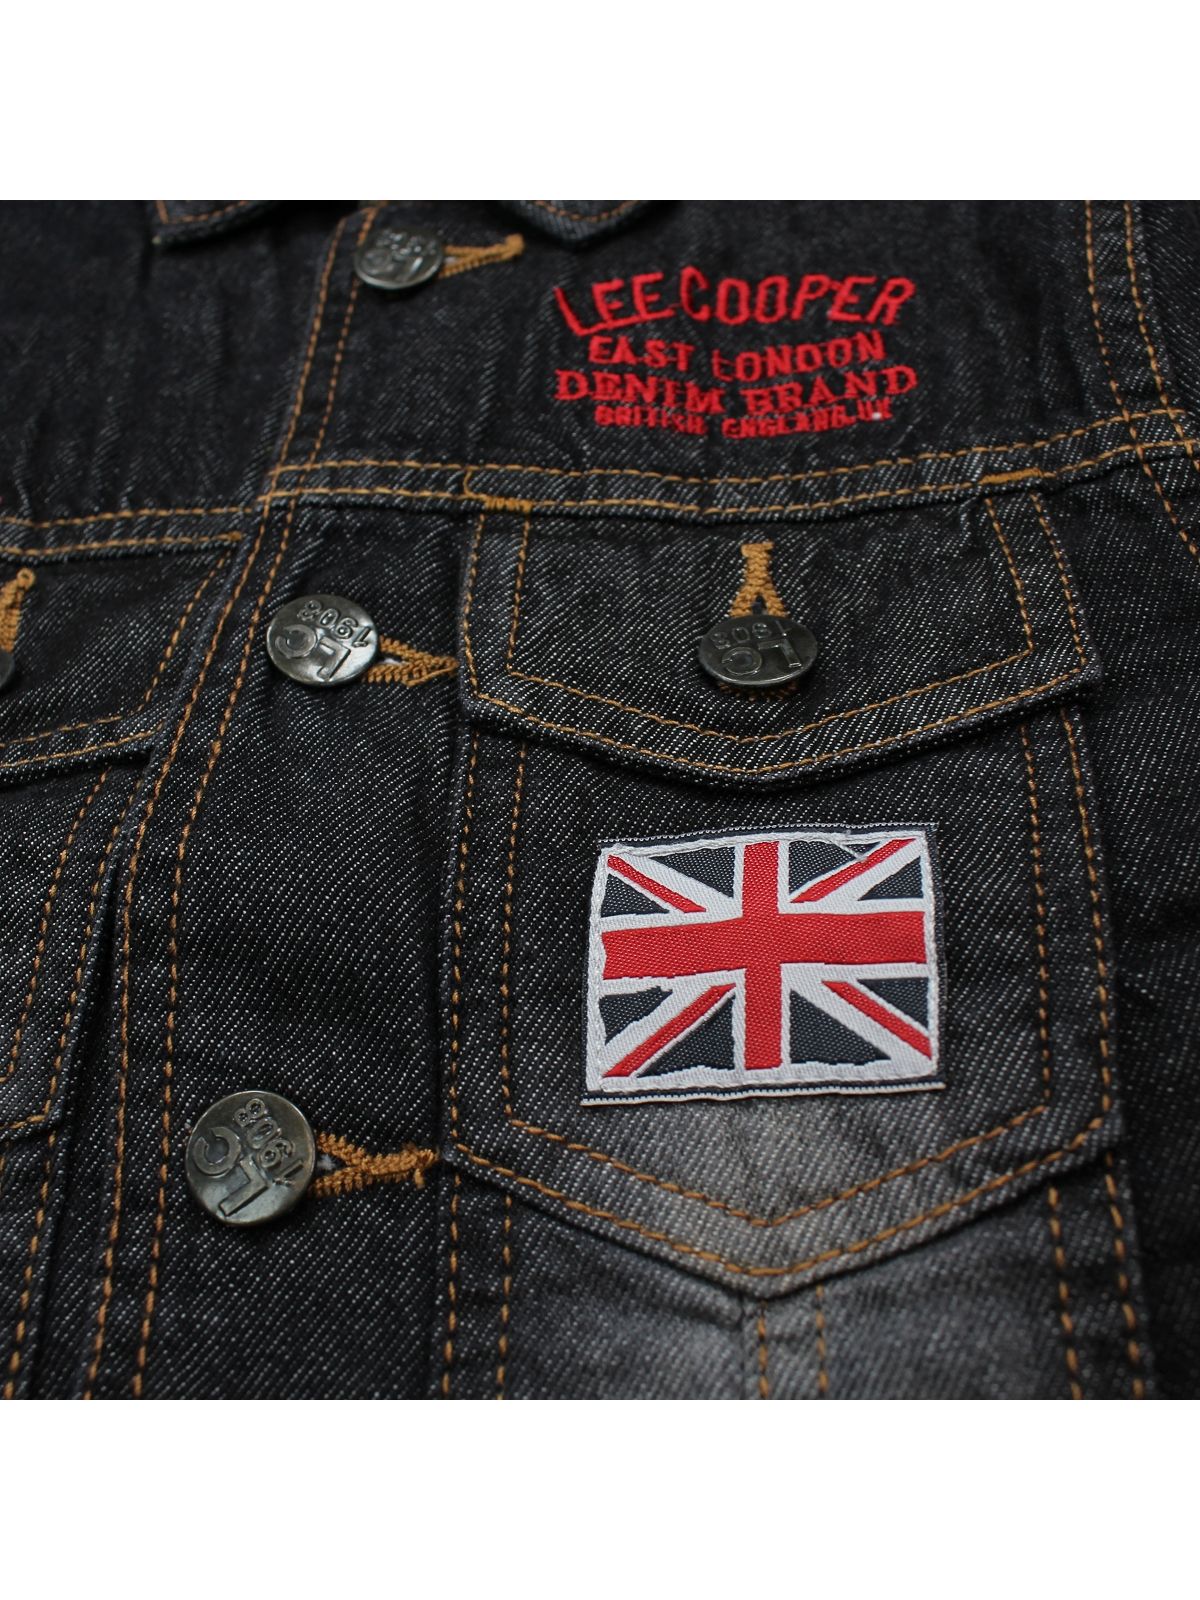 Veste jeans Lee Cooper